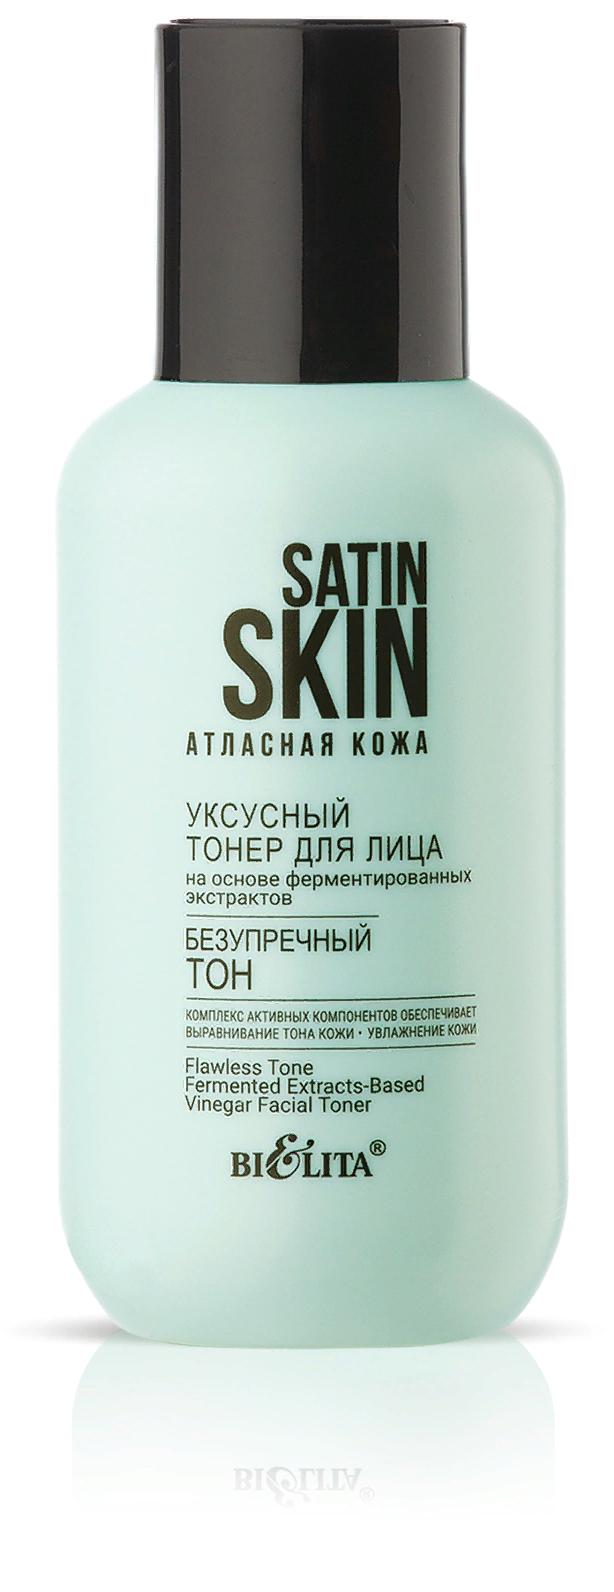 Тонер уксусный для лица на основе ферментированных экстрактов “Безупречный тон” Satin Skin, 95мл	 Belita